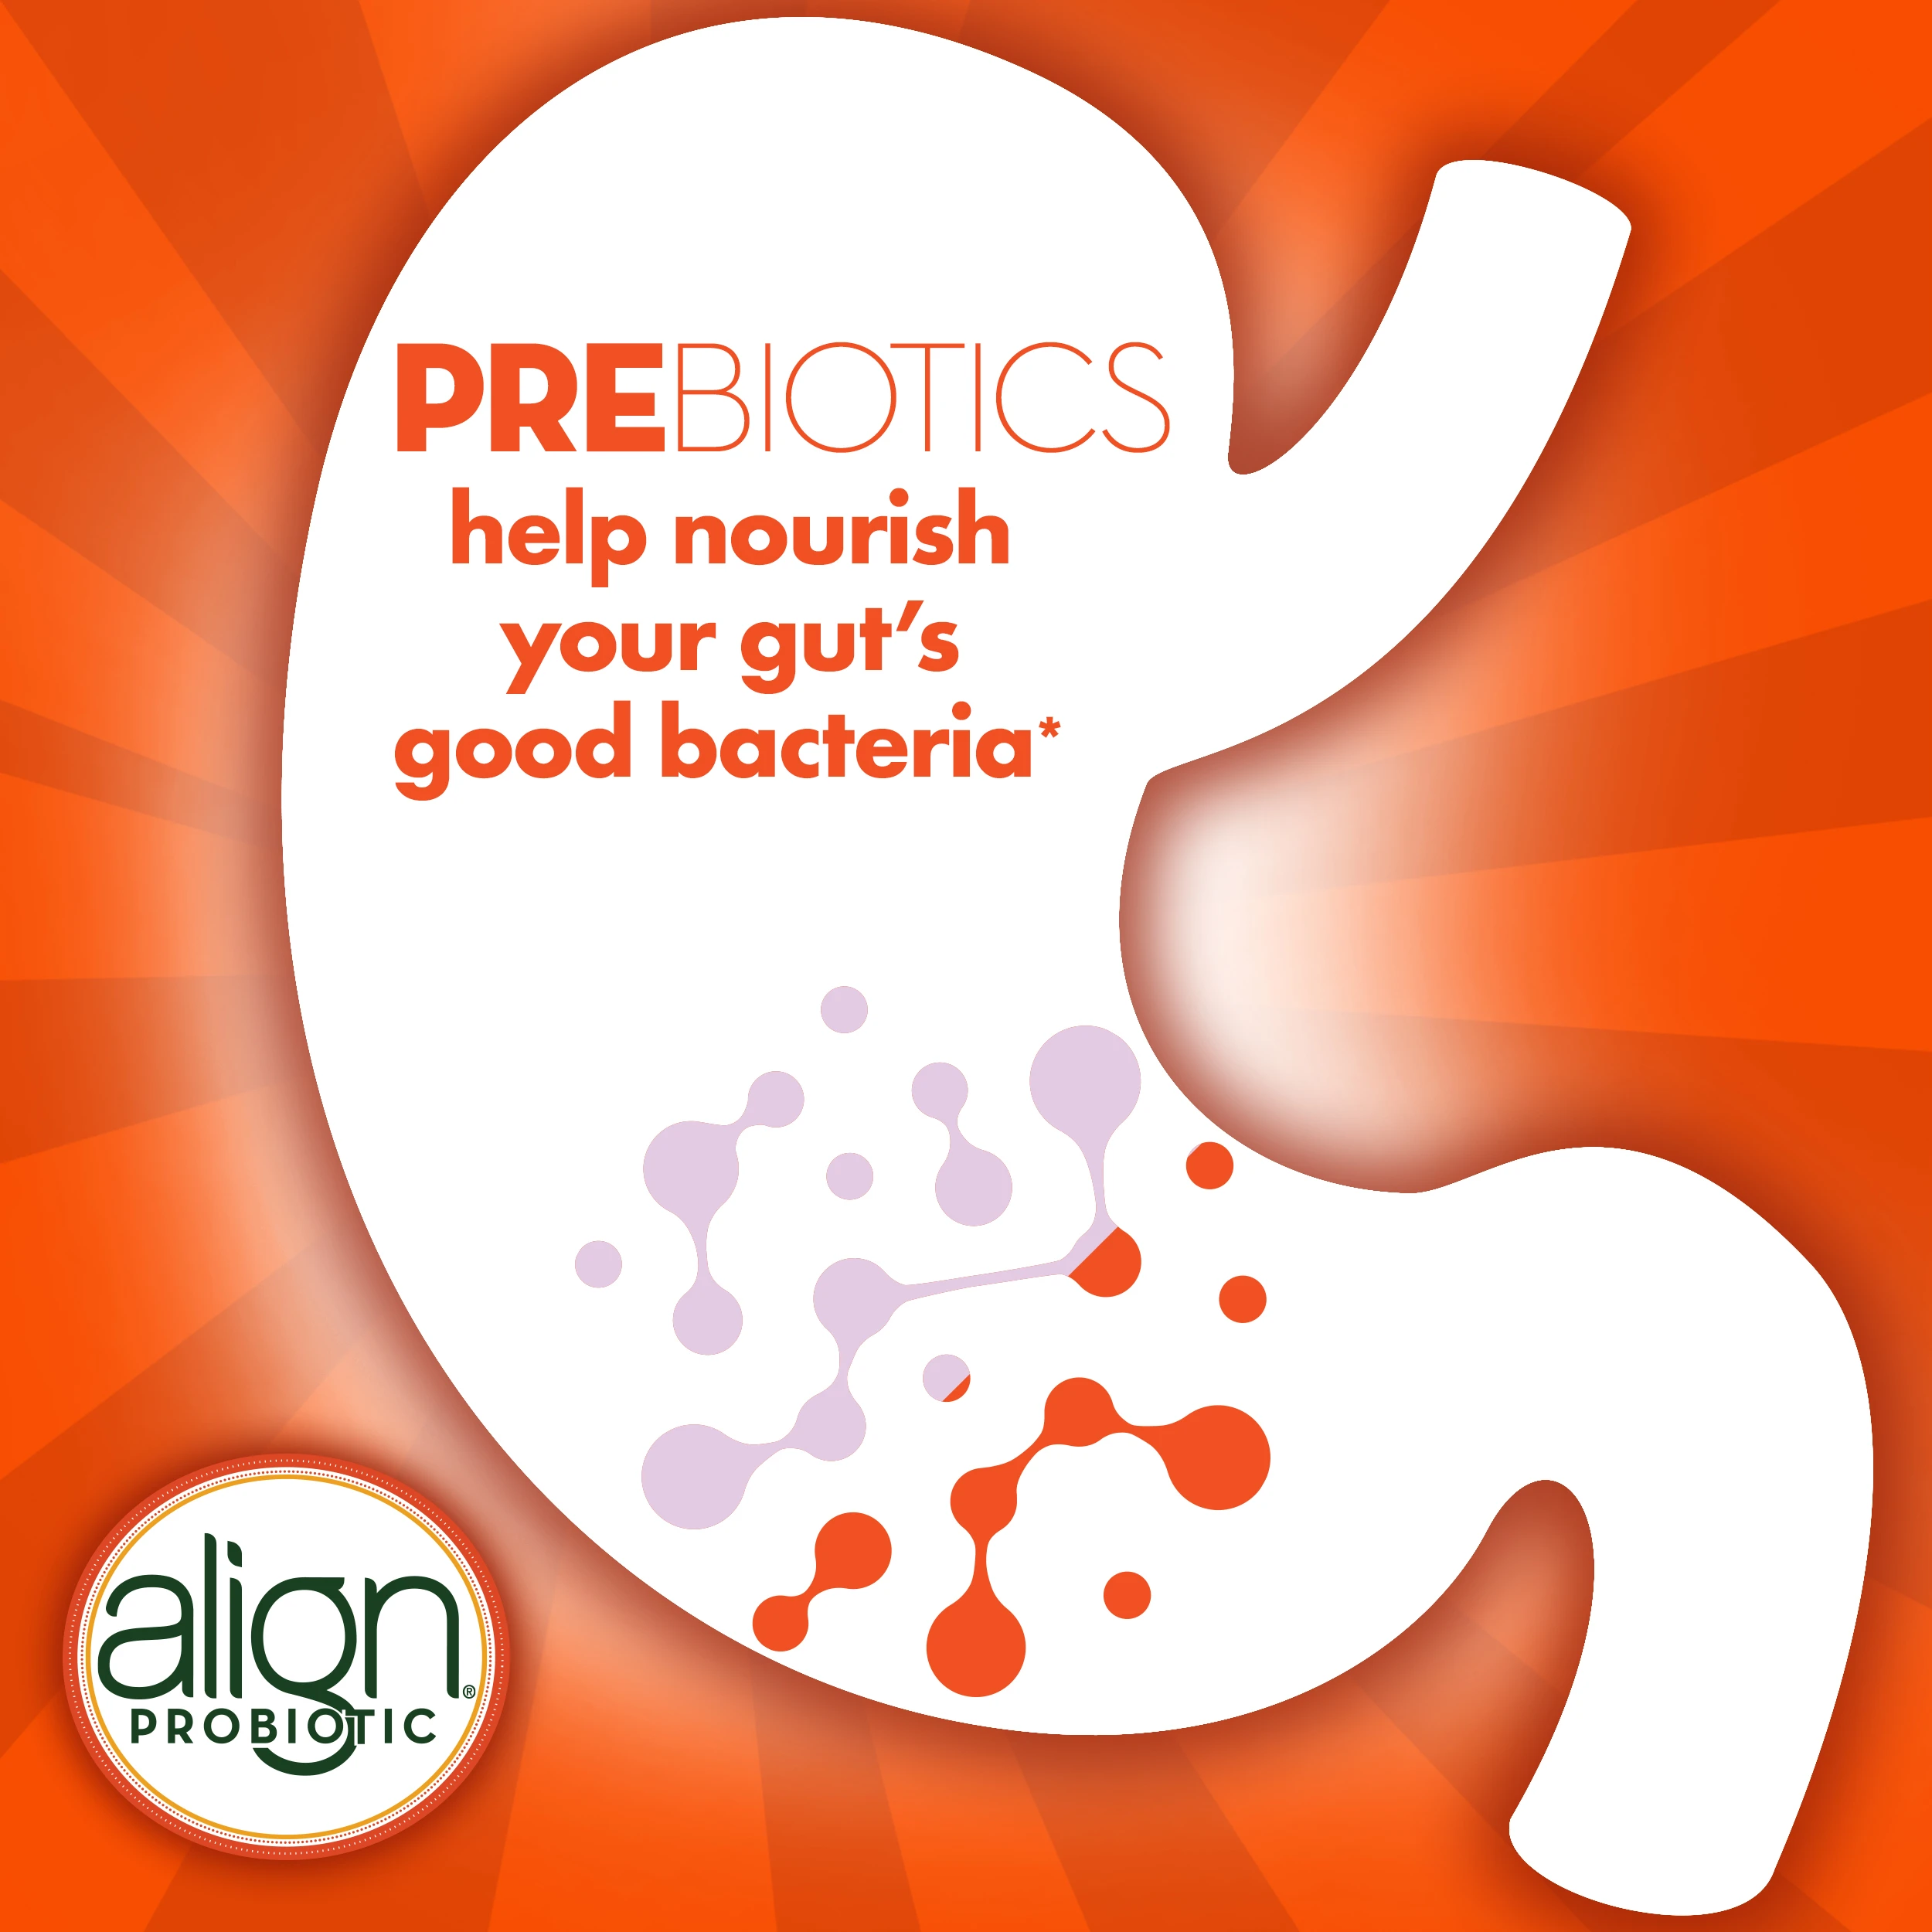 Align DualBiotic Prebiotic + Probiotic Gummies Supplement